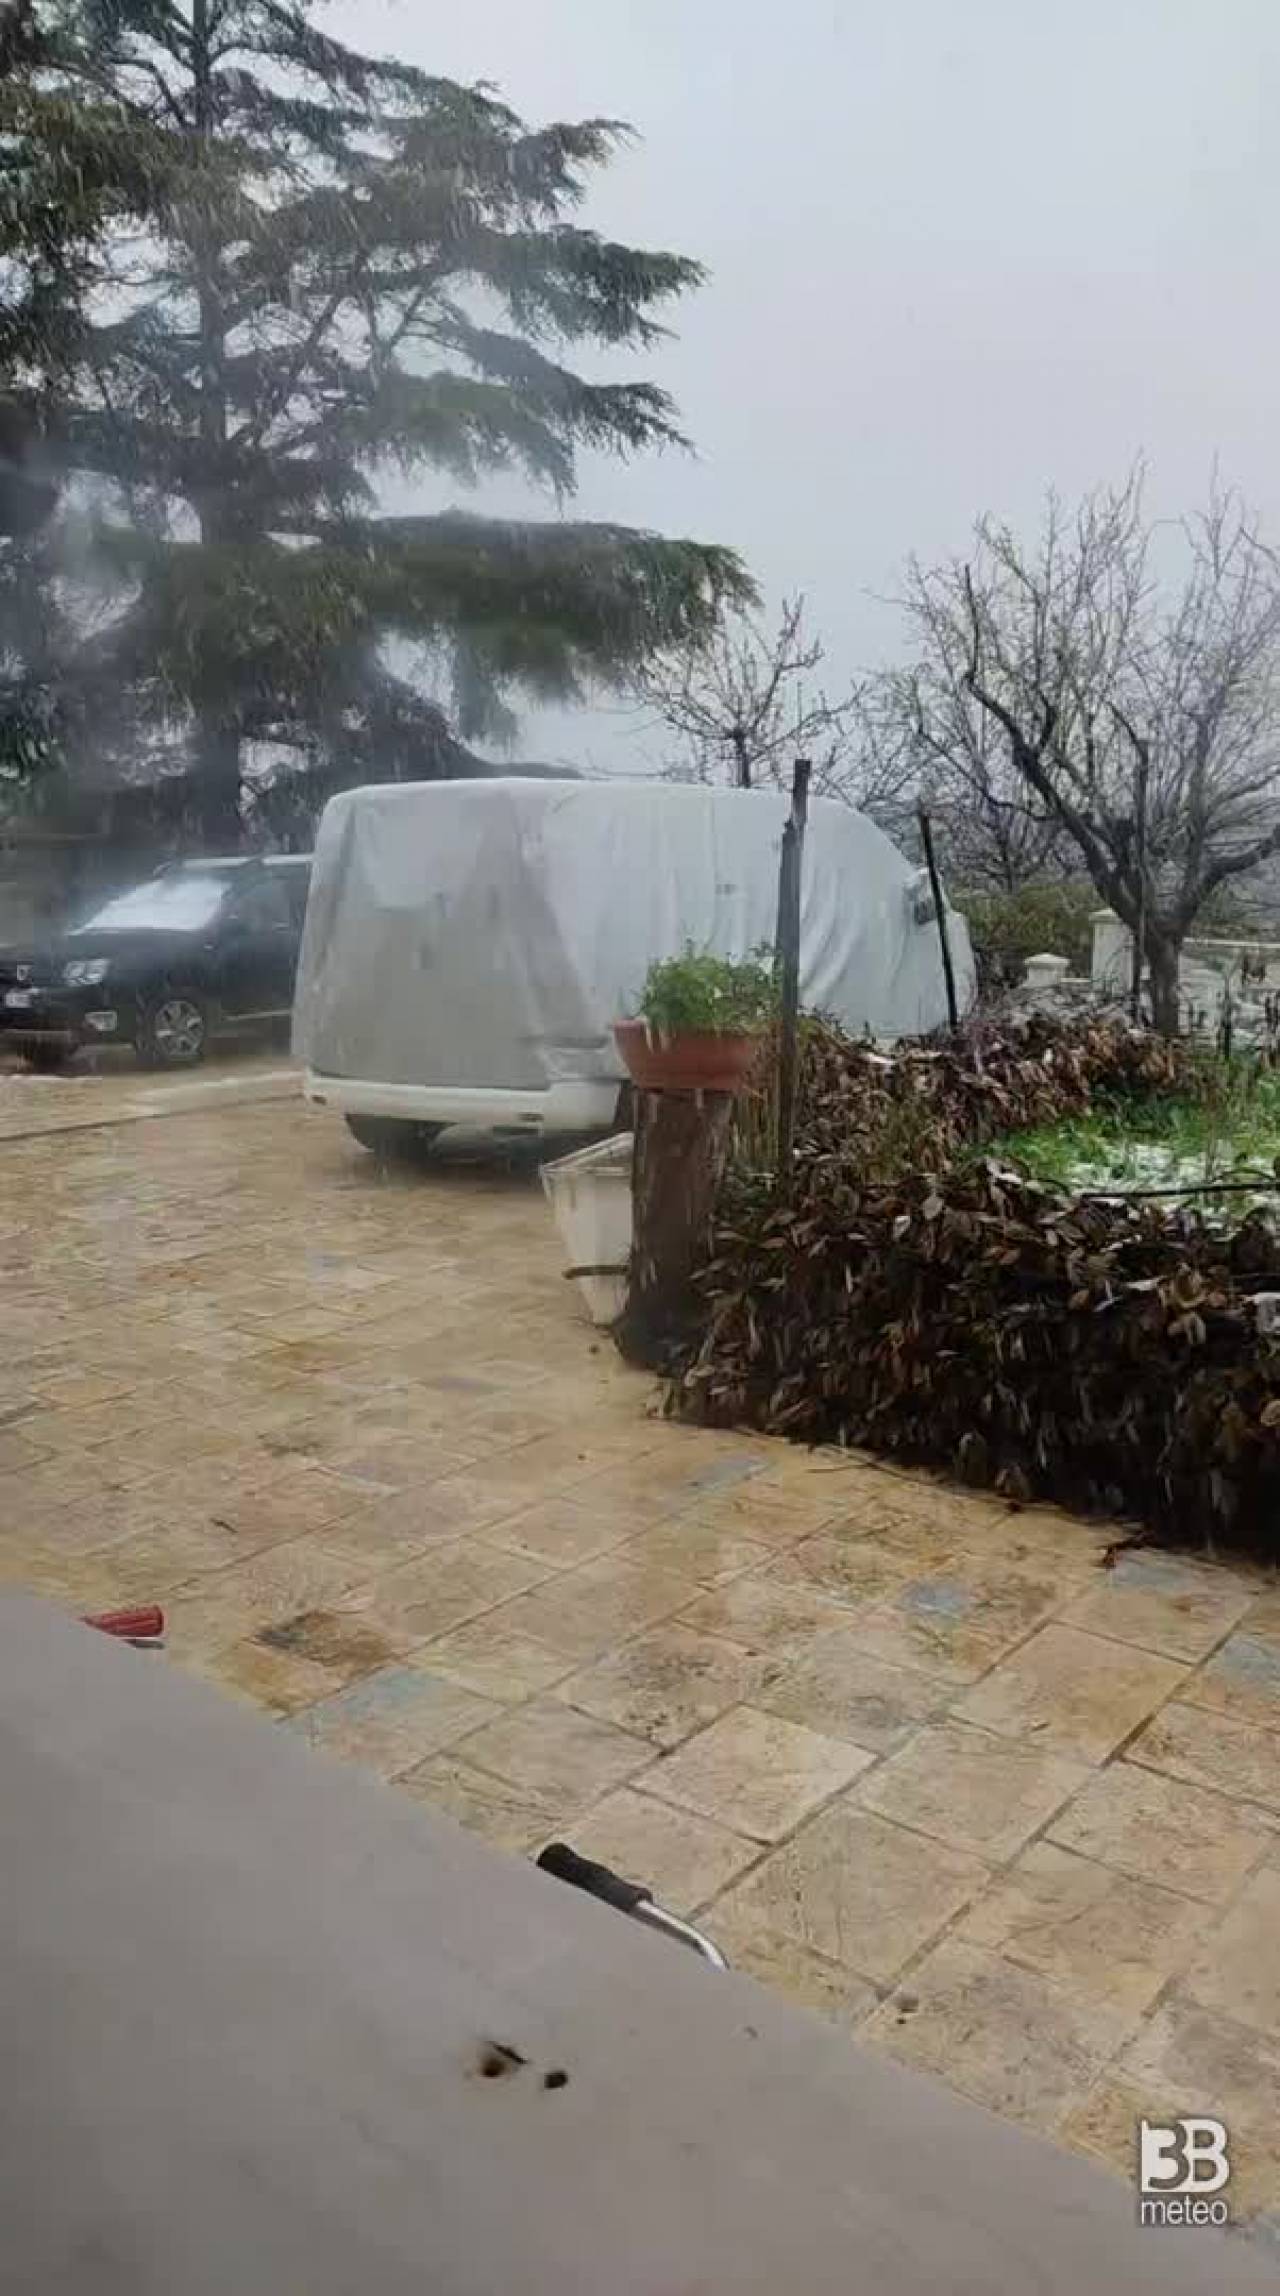 Cronaca Meteo Video Neve Puglia: fiocchi anche sulle pianure della provincia di Bari